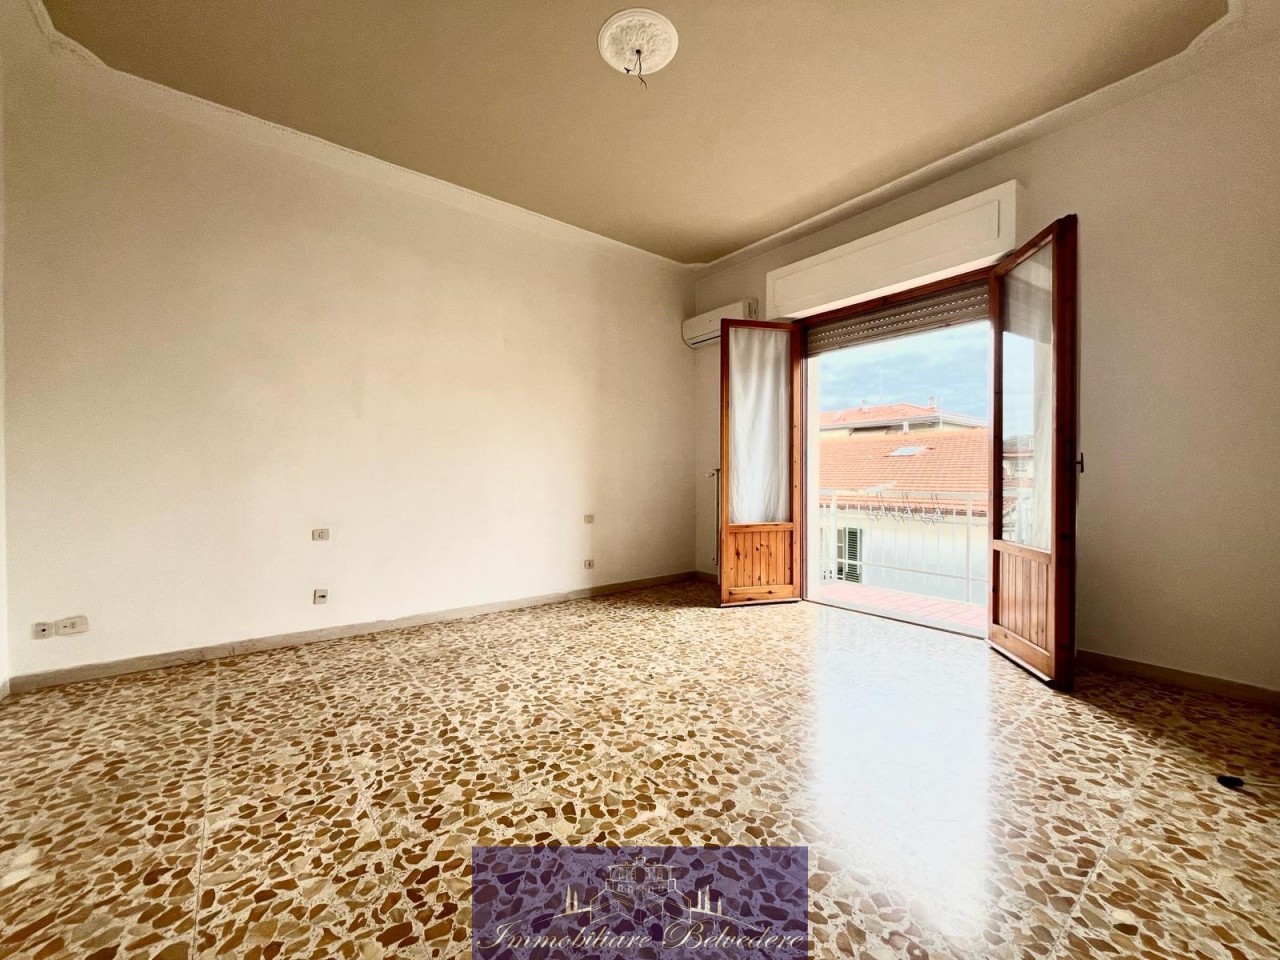 Appartamento in vendita a Impruneta, 4 locali, prezzo € 245.000 | PortaleAgenzieImmobiliari.it